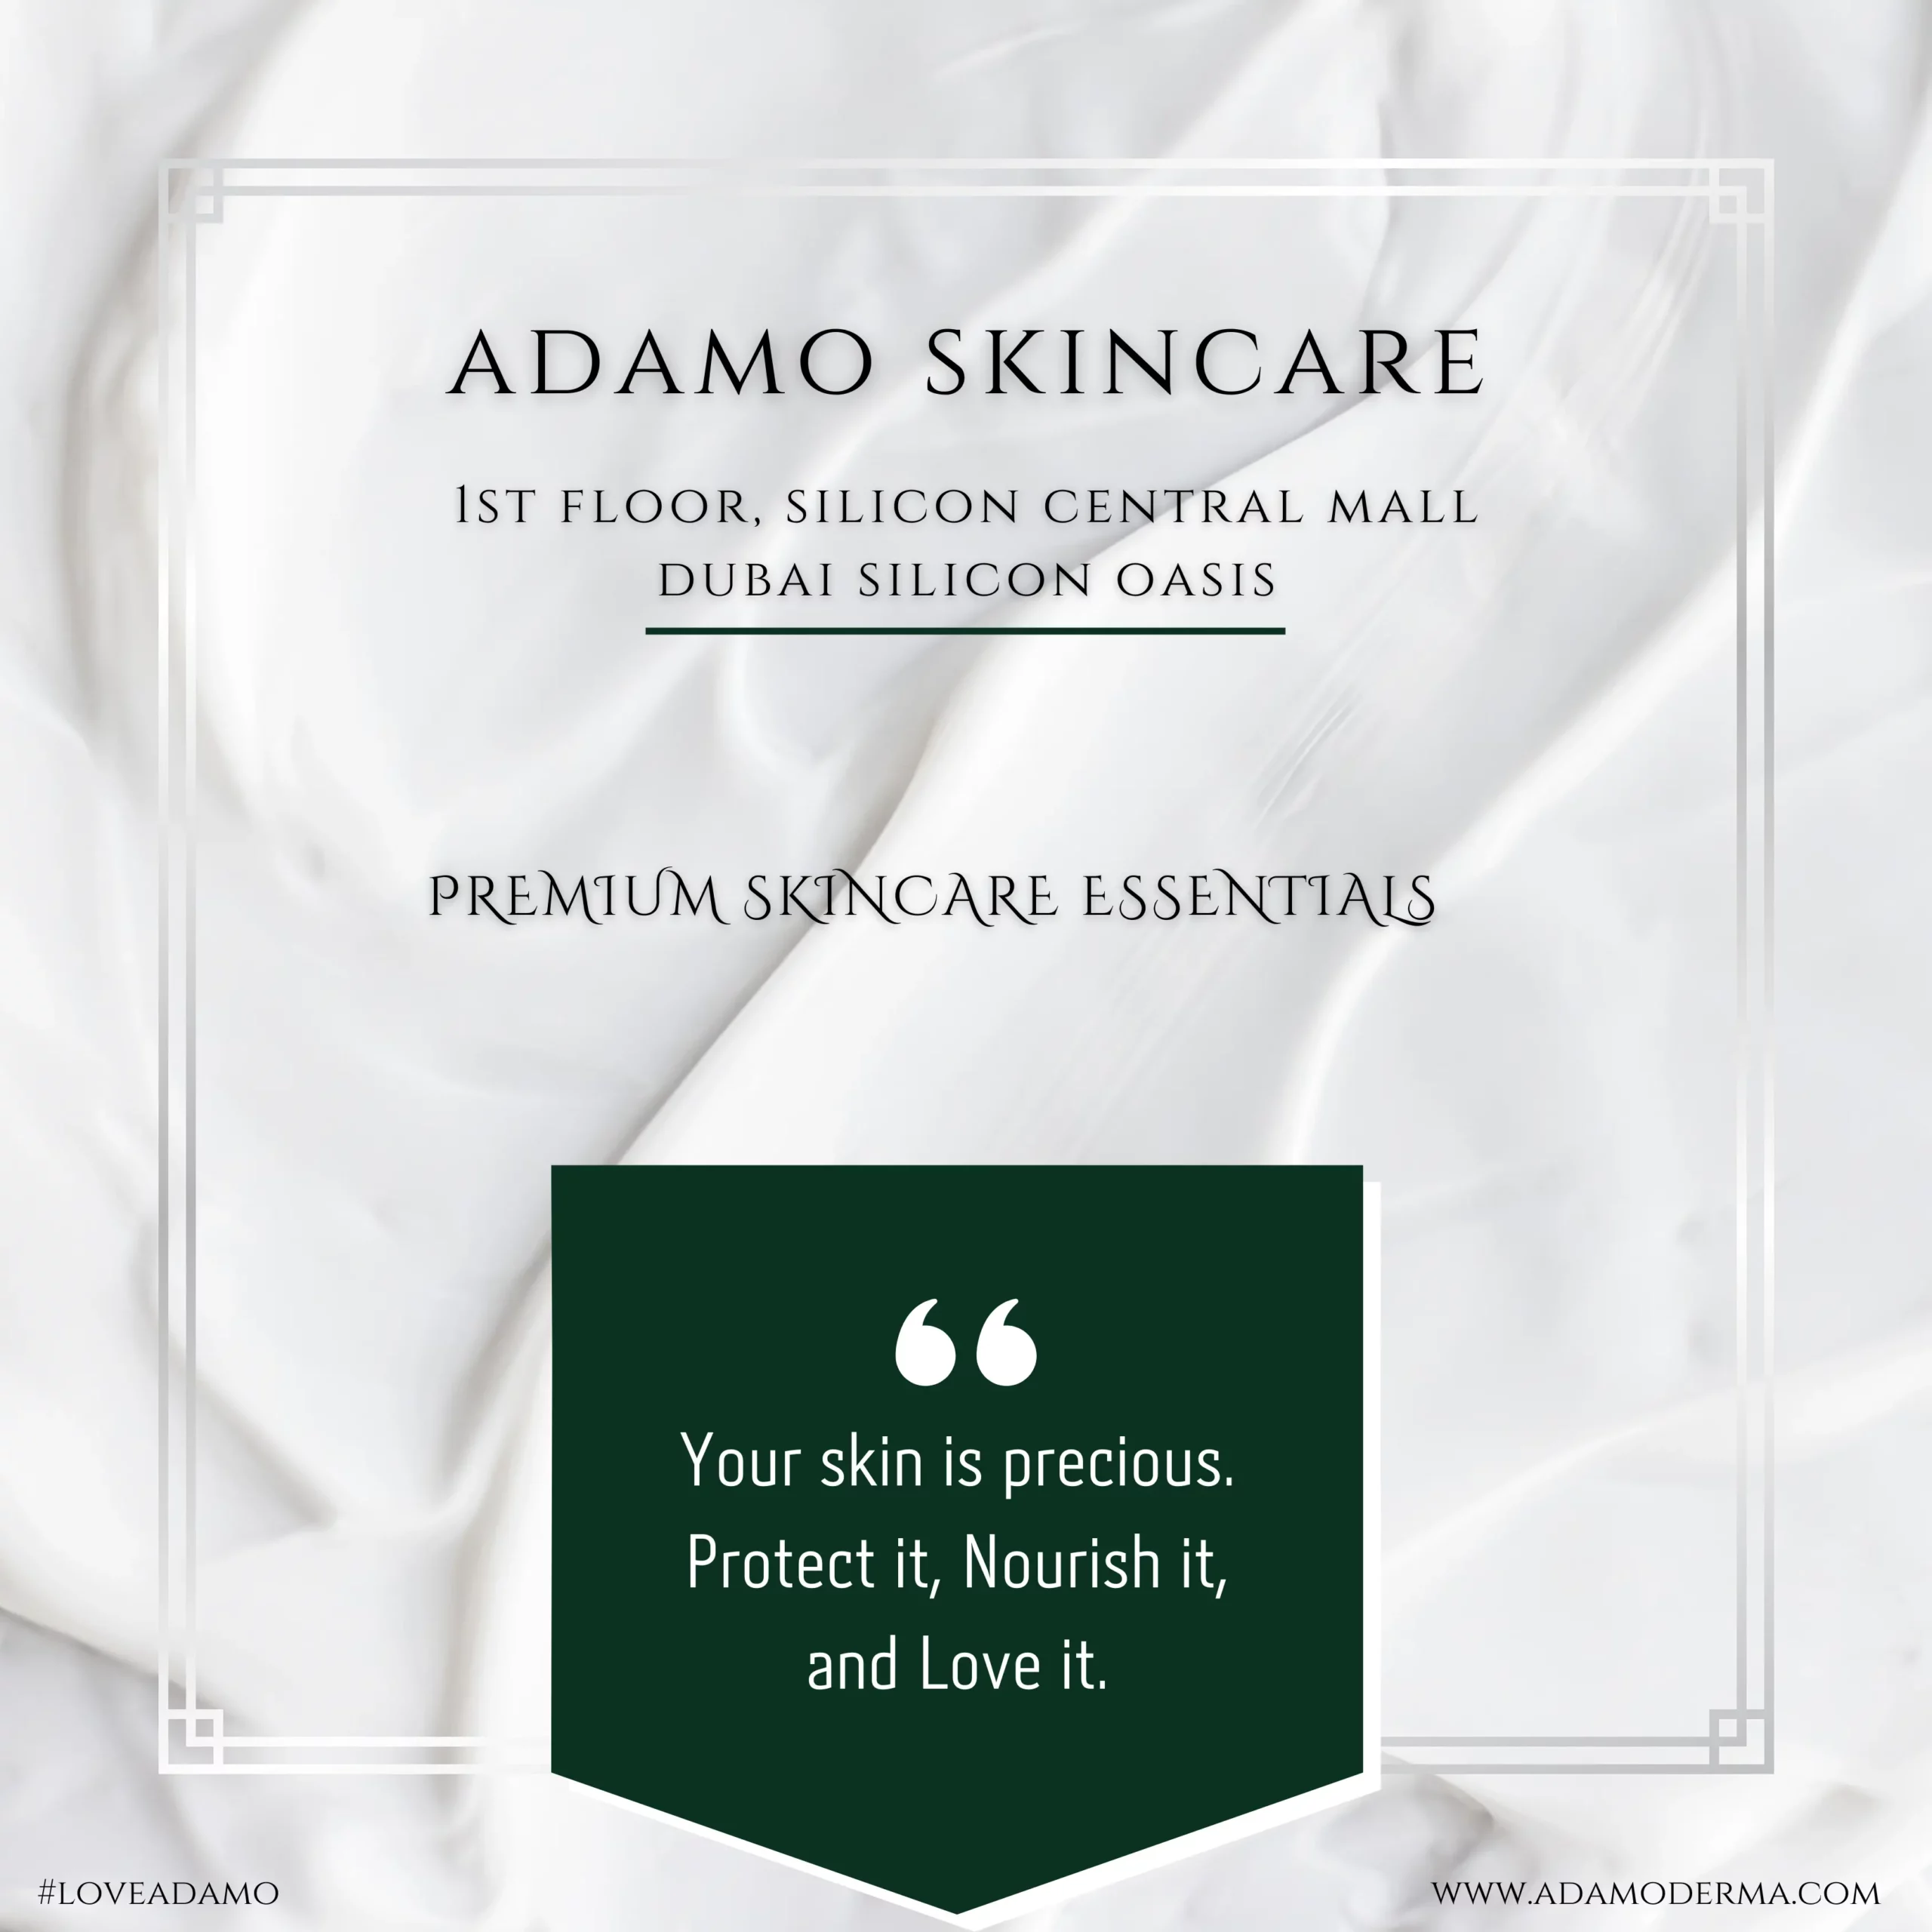 Adamo Skincare Essentials- Silicon Central Mall, Dubai Silicon Oasis